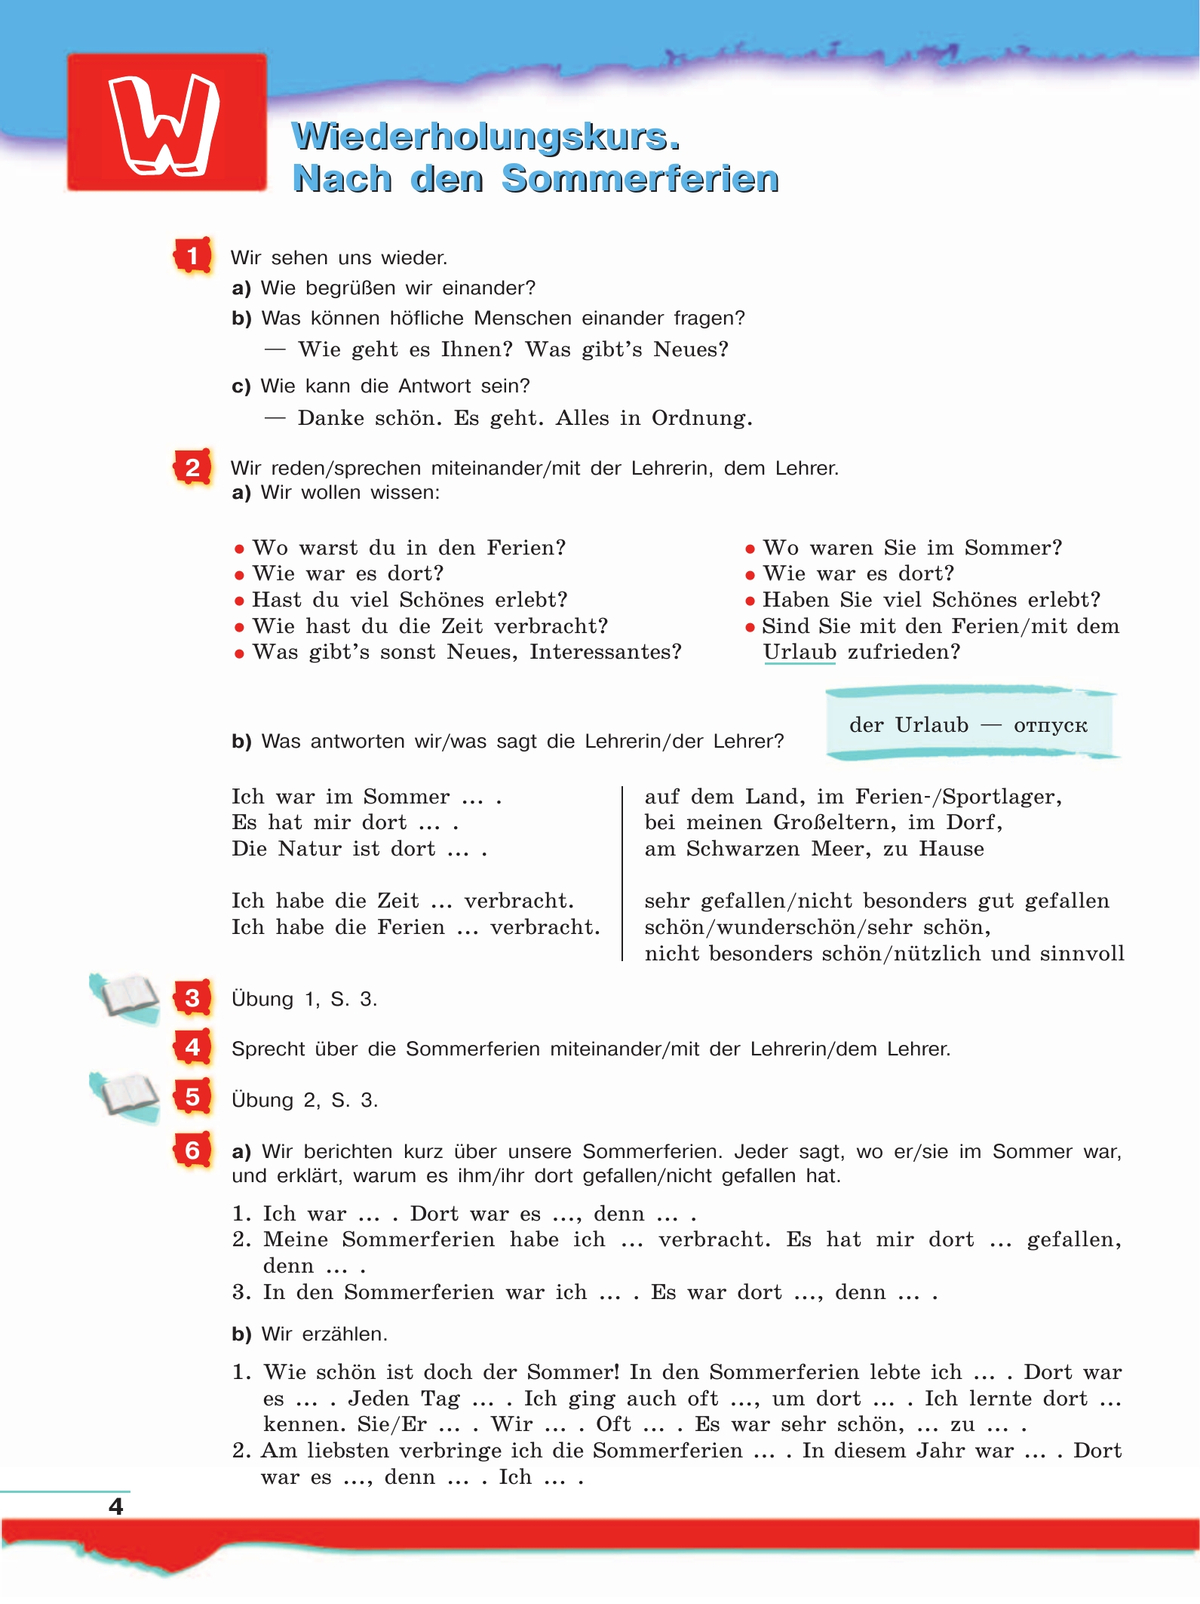 Немецкий язык. 7 класс. Учебник 9